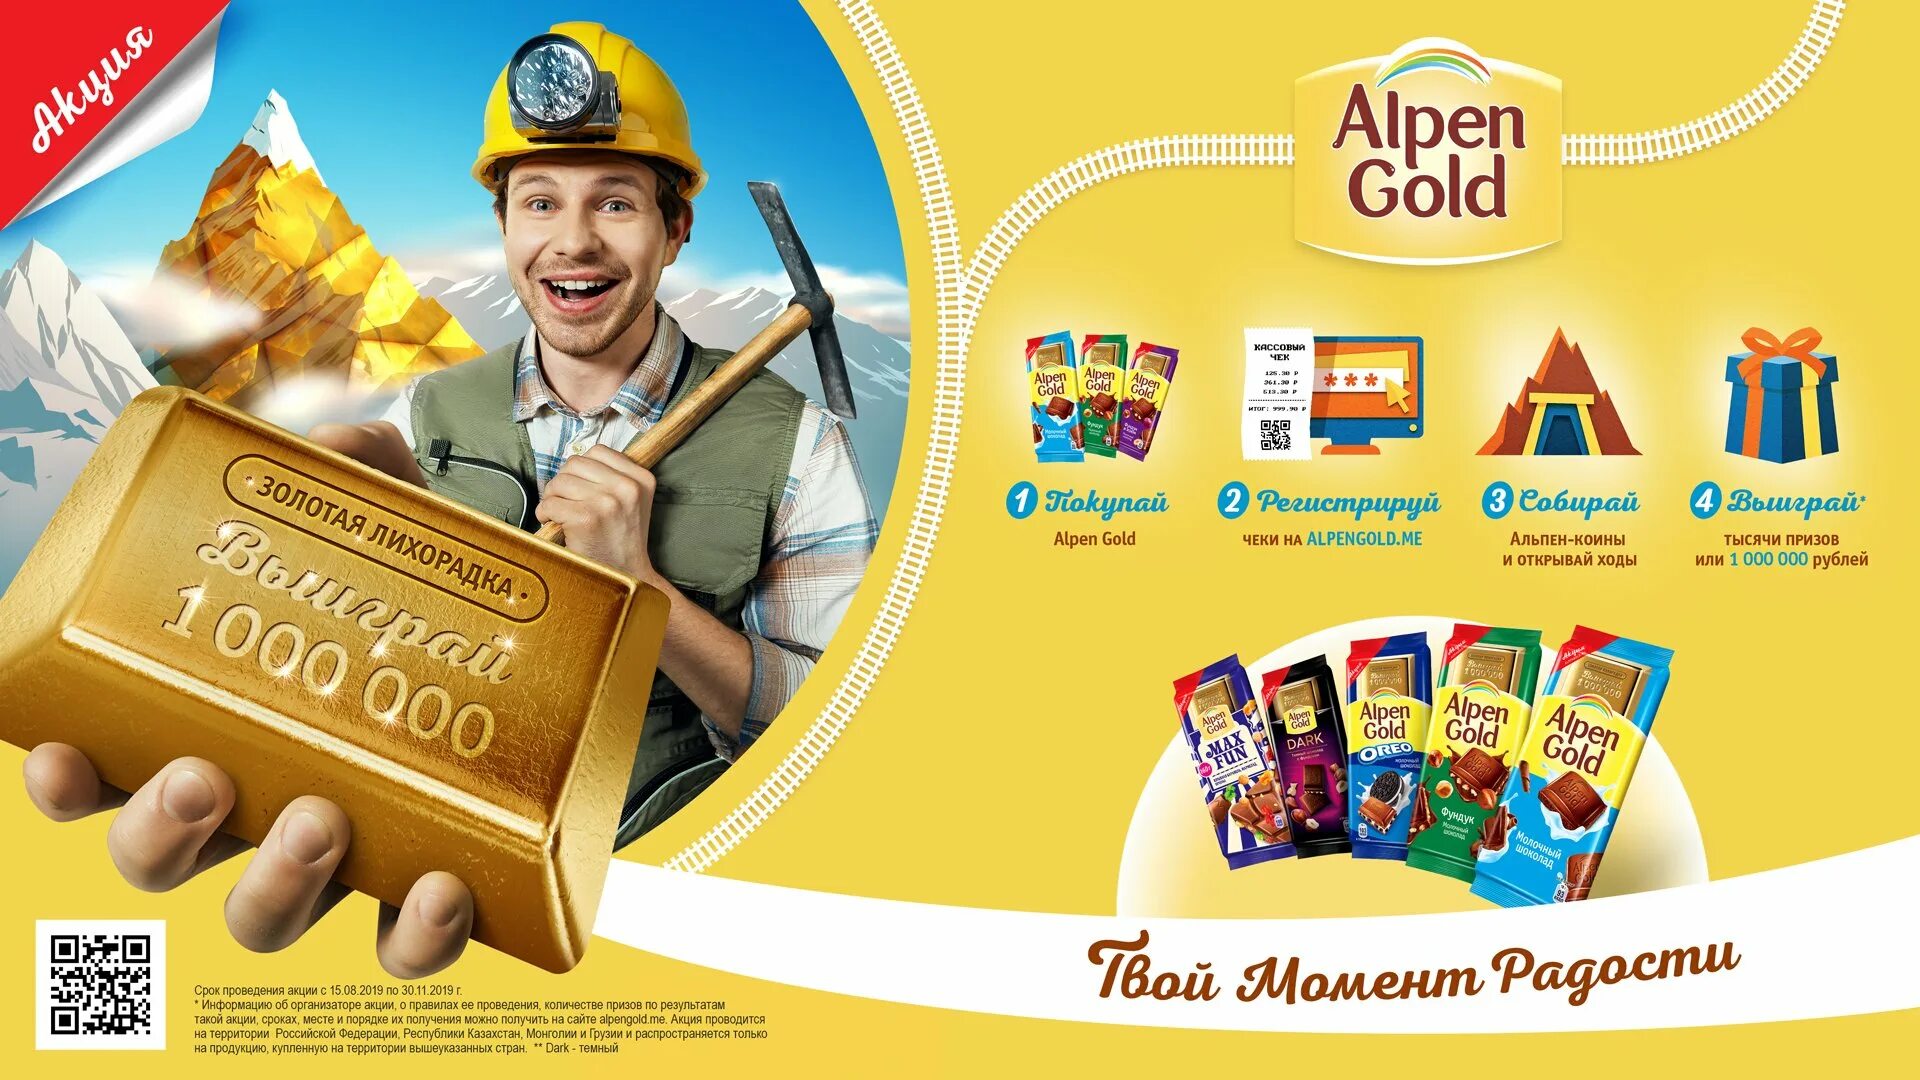 Акция первые получат. Золотая лихорадка Альпен Гольд 2019. Альпен Гольд 2009. Акция Alpen Gold «Золотая лихорадка». Alpen Gold реклама.